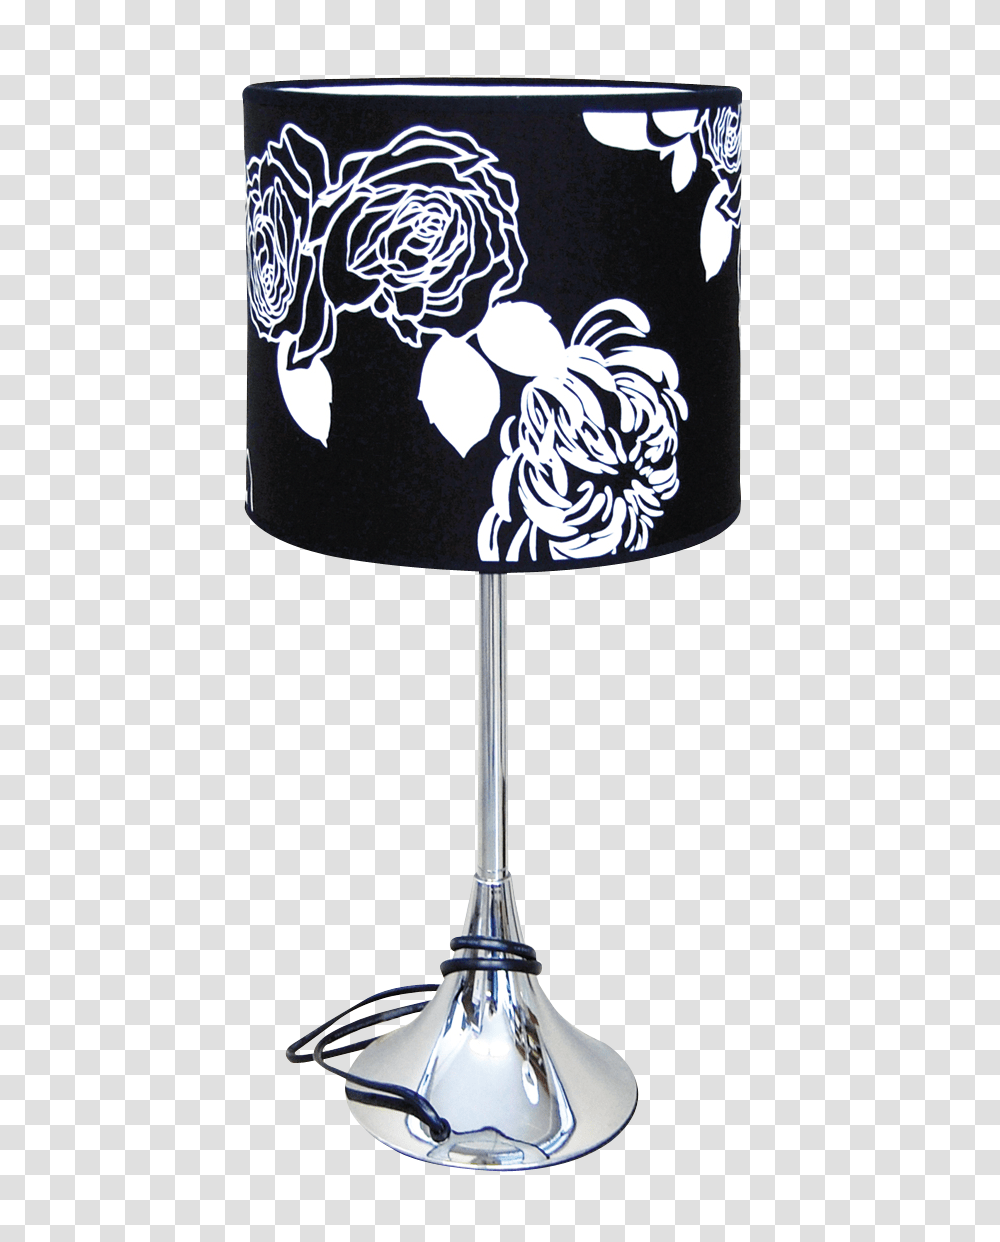 Standard Lamp Image, Lampshade, Table Lamp Transparent Png